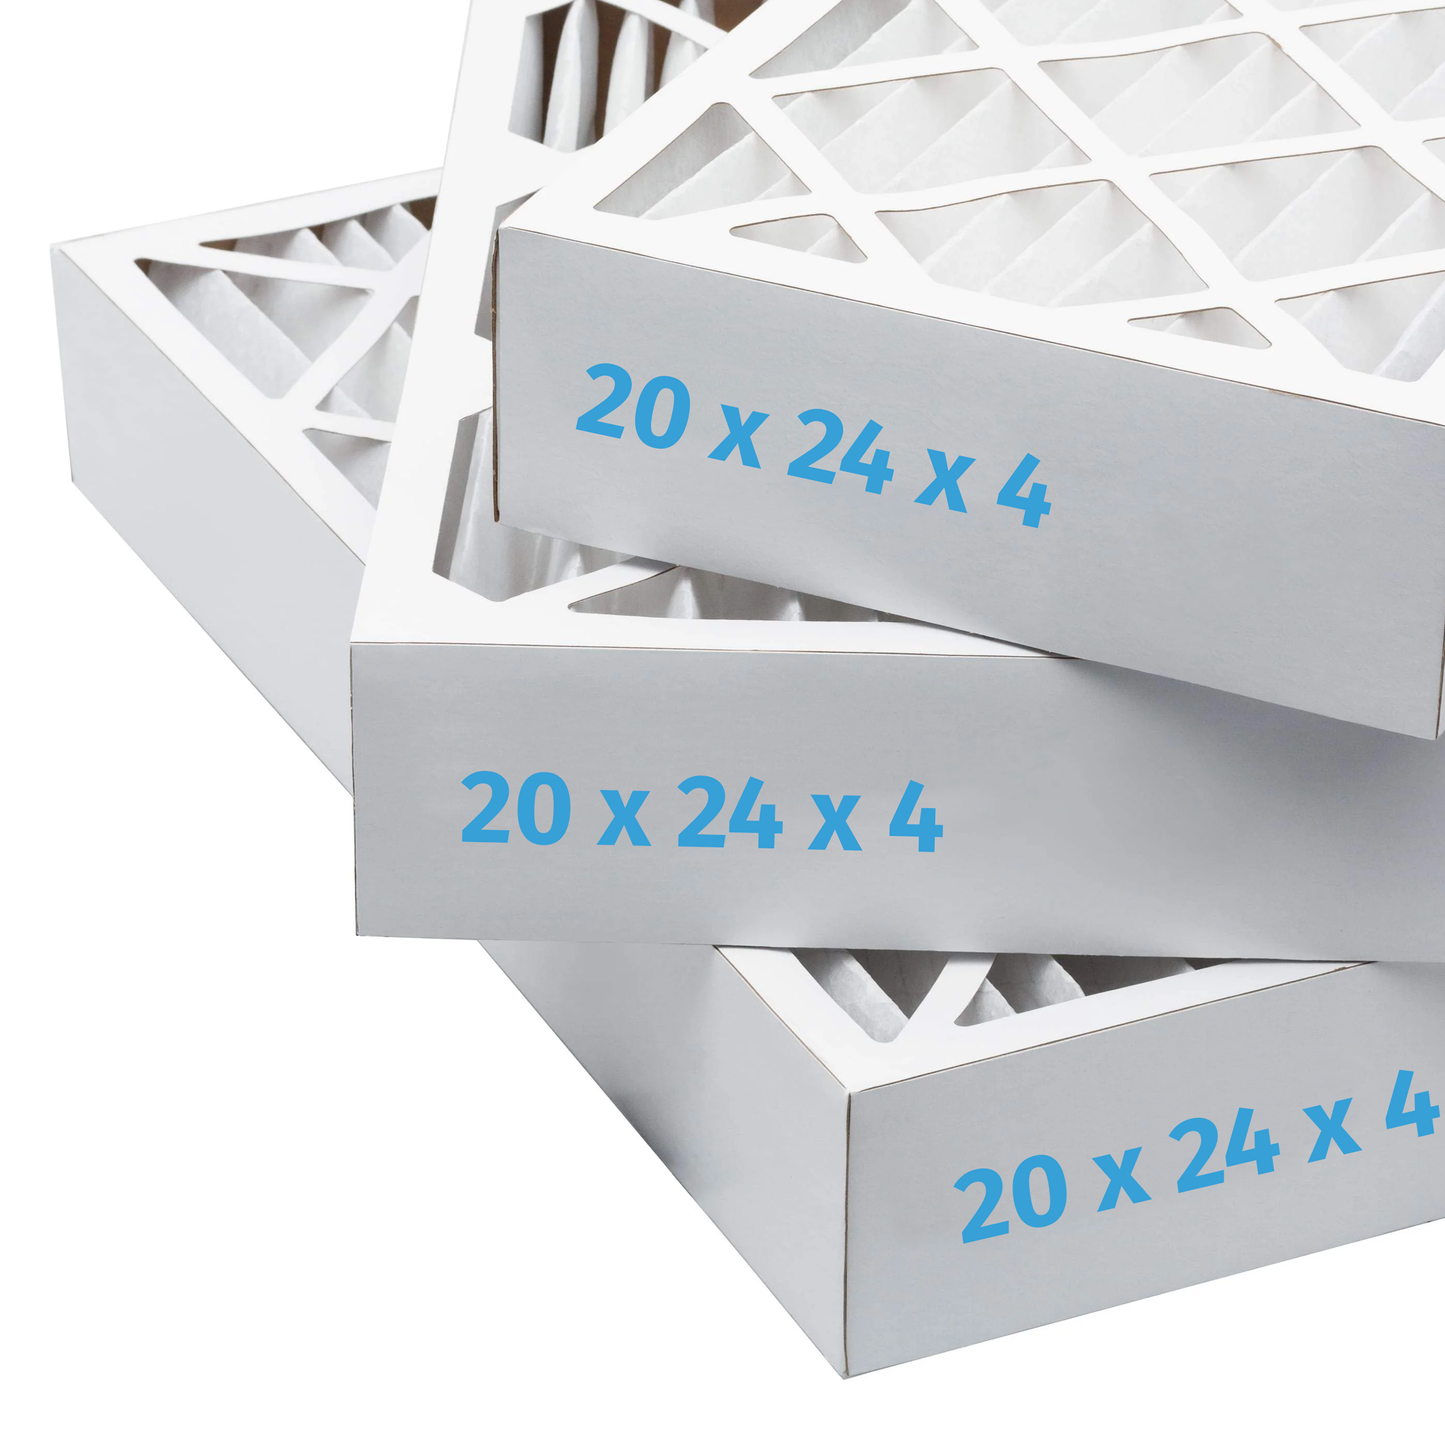 20x24x4 Air Filter - AC Furnace Filter